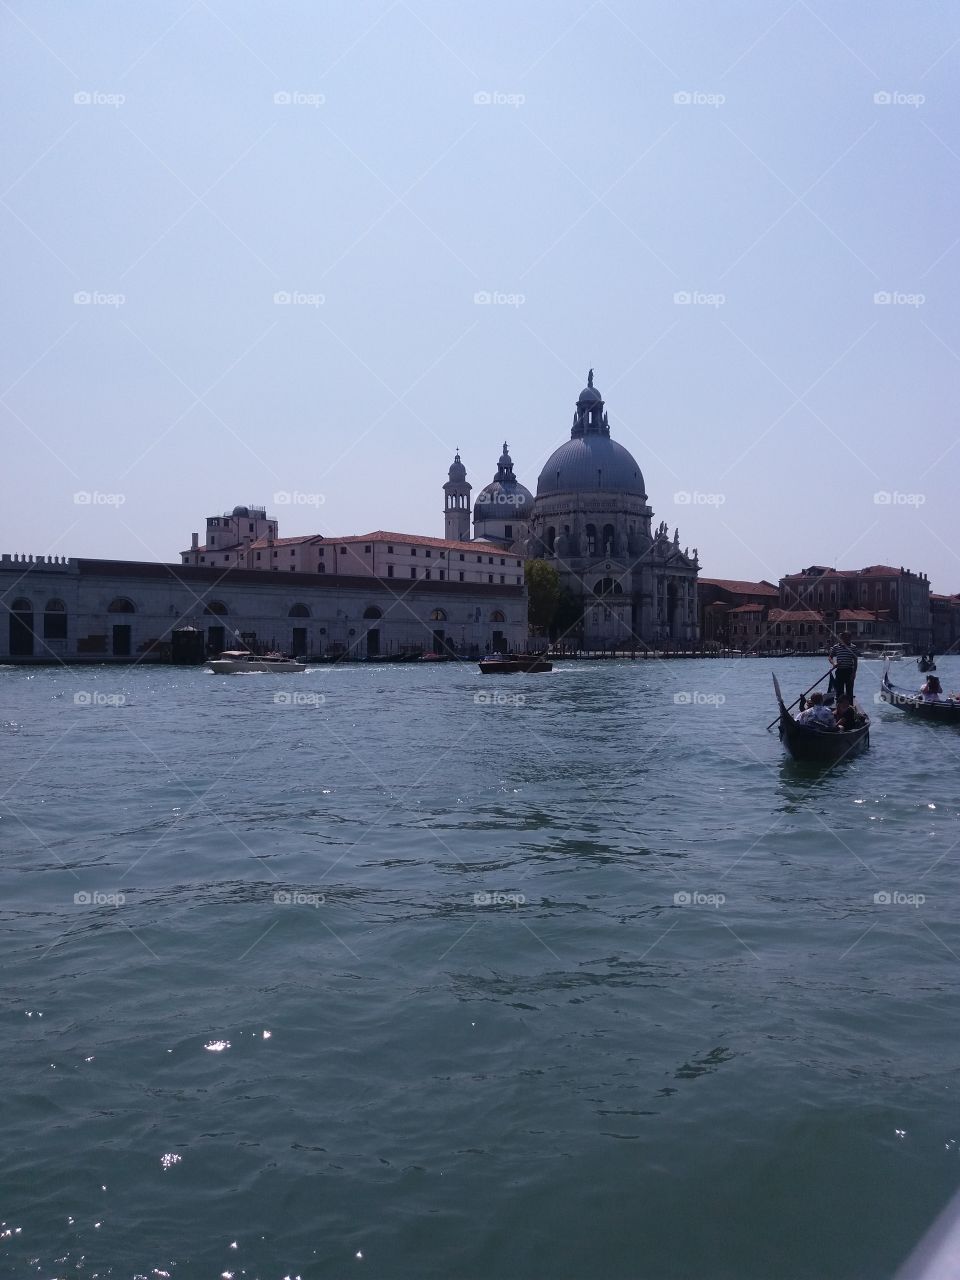 Venice